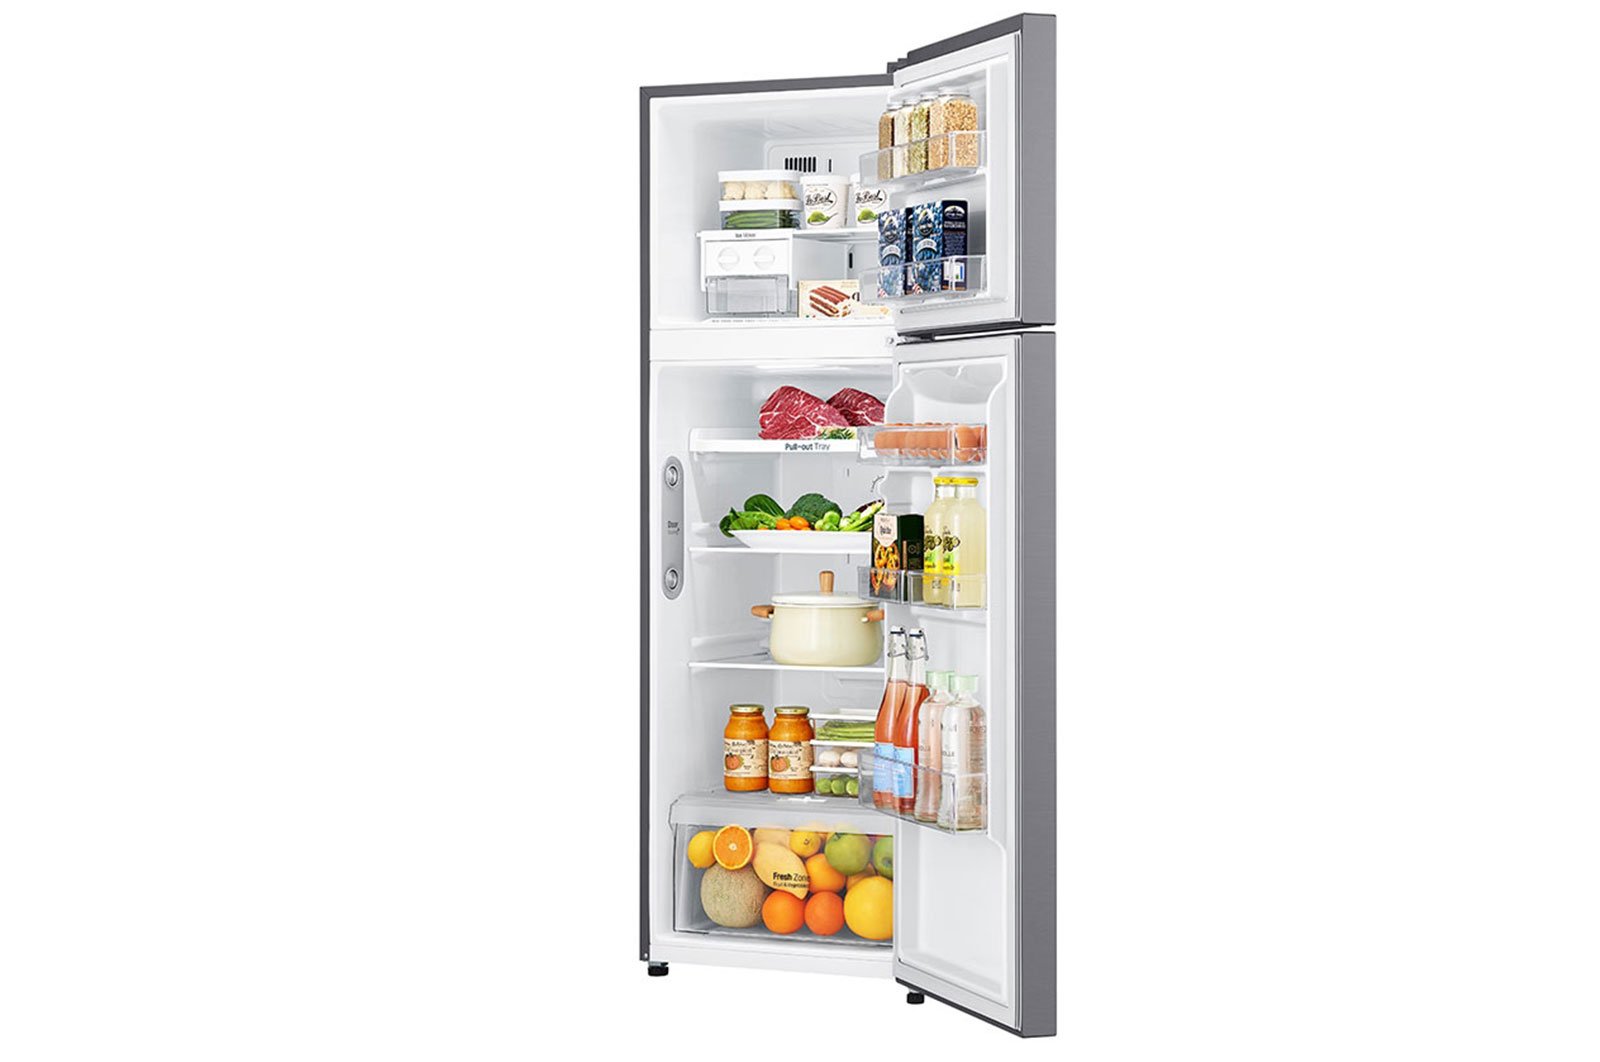 Tủ lạnh LG 315 lít GN-M315PS Smart Inverter